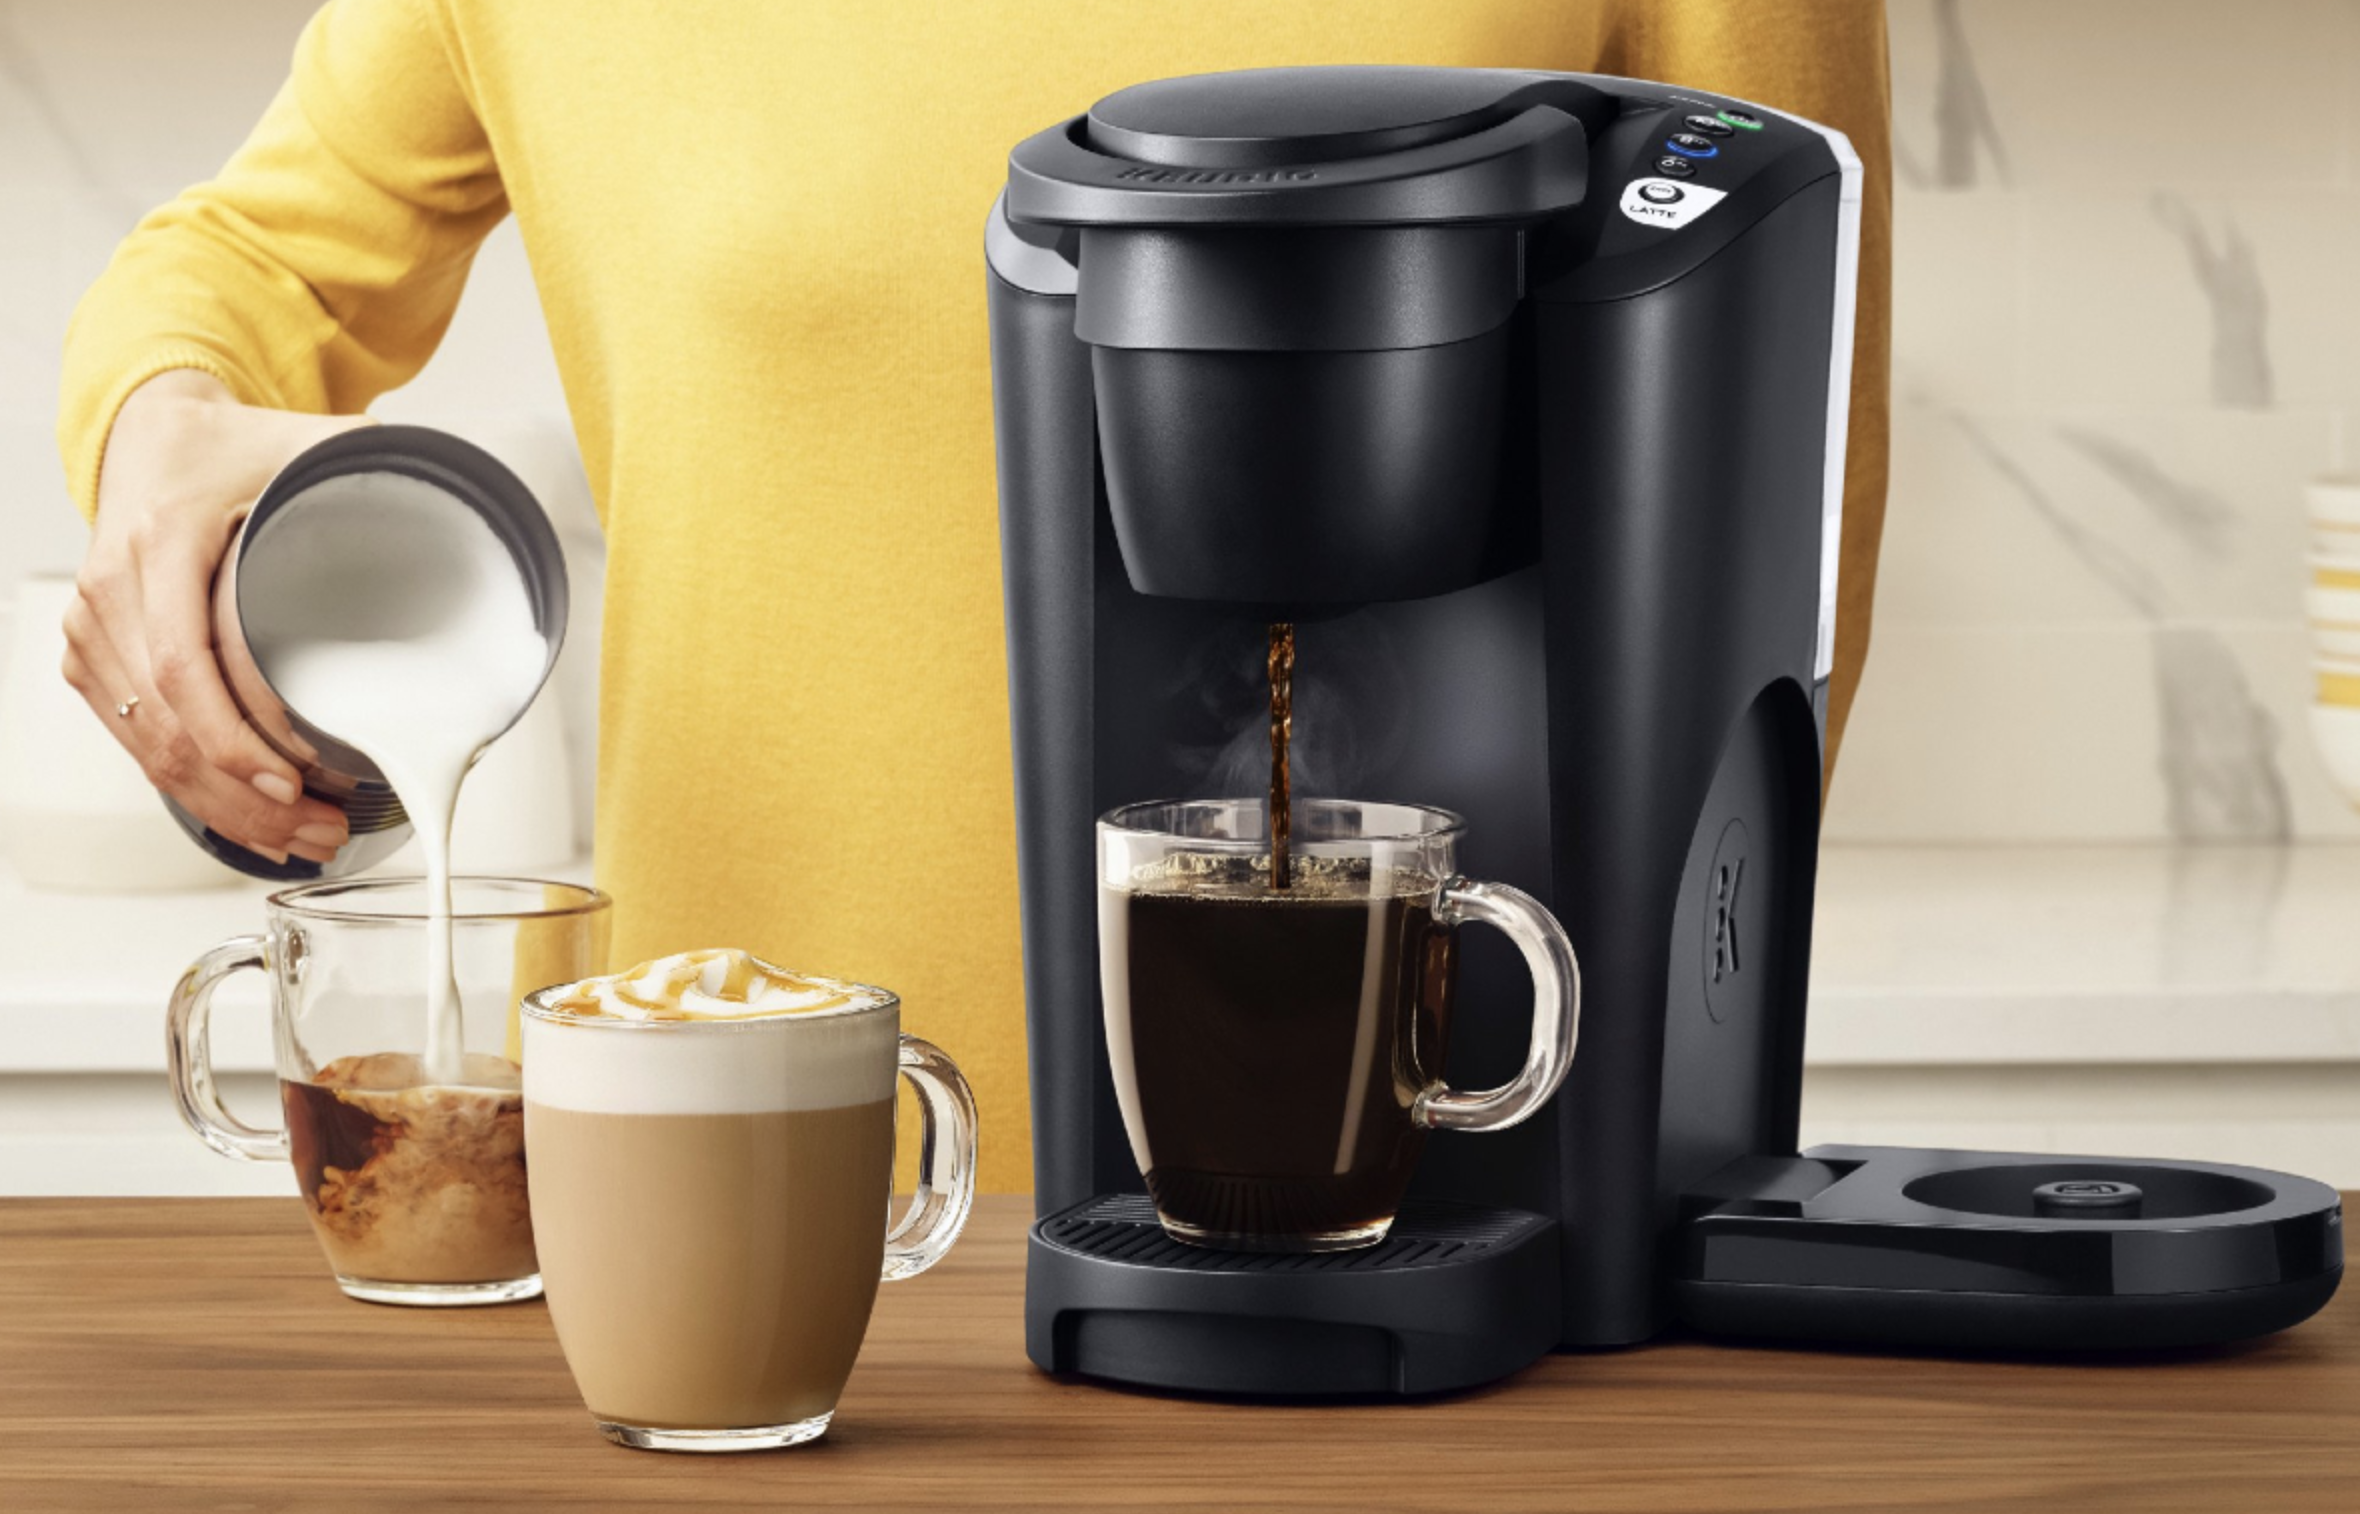 https://www.digitaltrends.com/wp-content/uploads/2023/05/Keurig-K-Latte-Single-Serve-K-Cup-Pod-Coffee-Maker.png?p=1